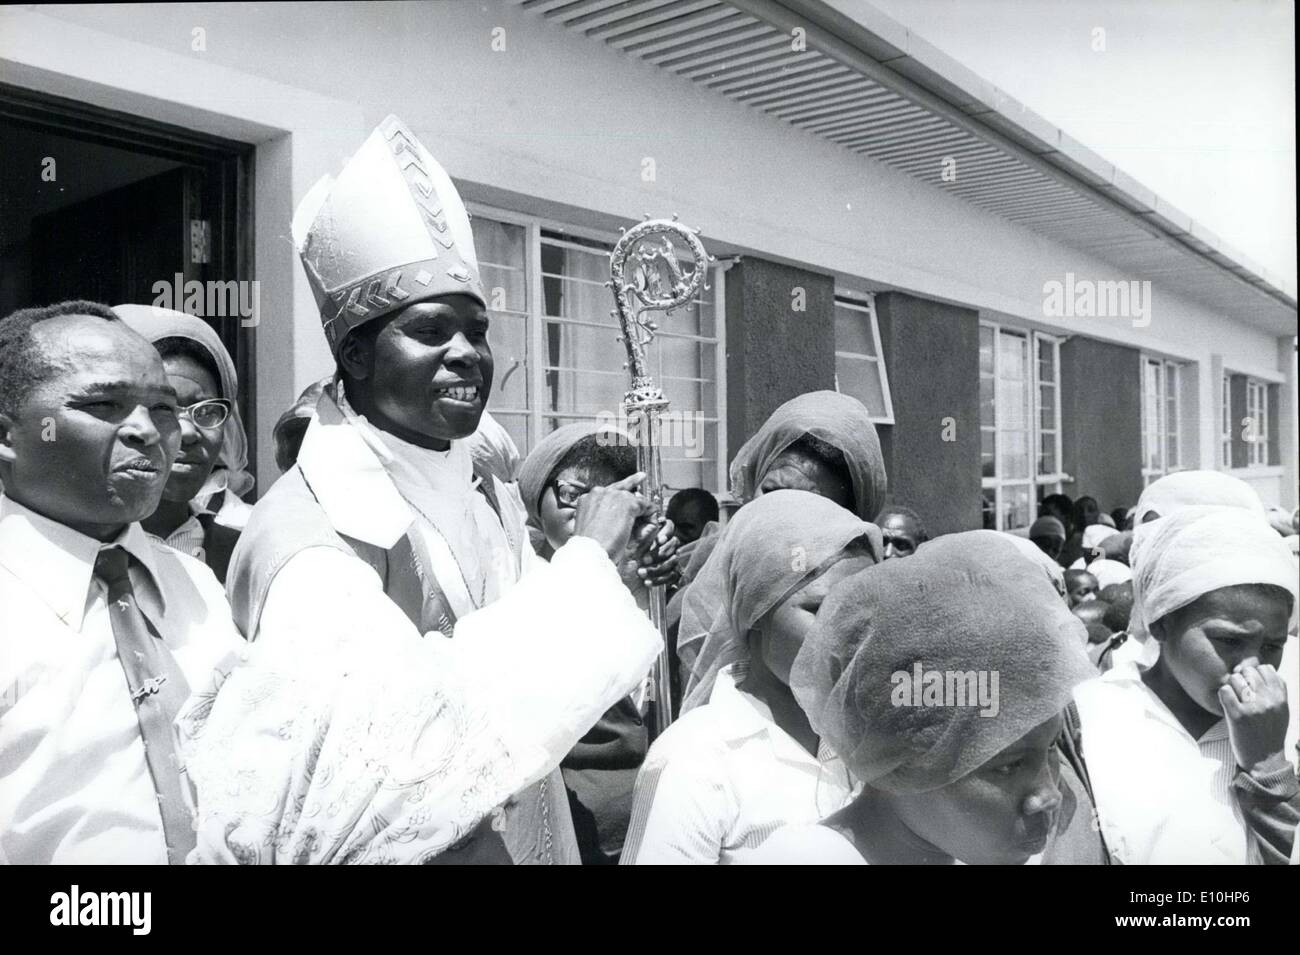 14 février 1973 - Après la messe, à l'extérieur dans le bain soleil africain, l'archevêque de Nansi le cardinal Maurice Otunga sourit en guise de salutation Banque D'Images